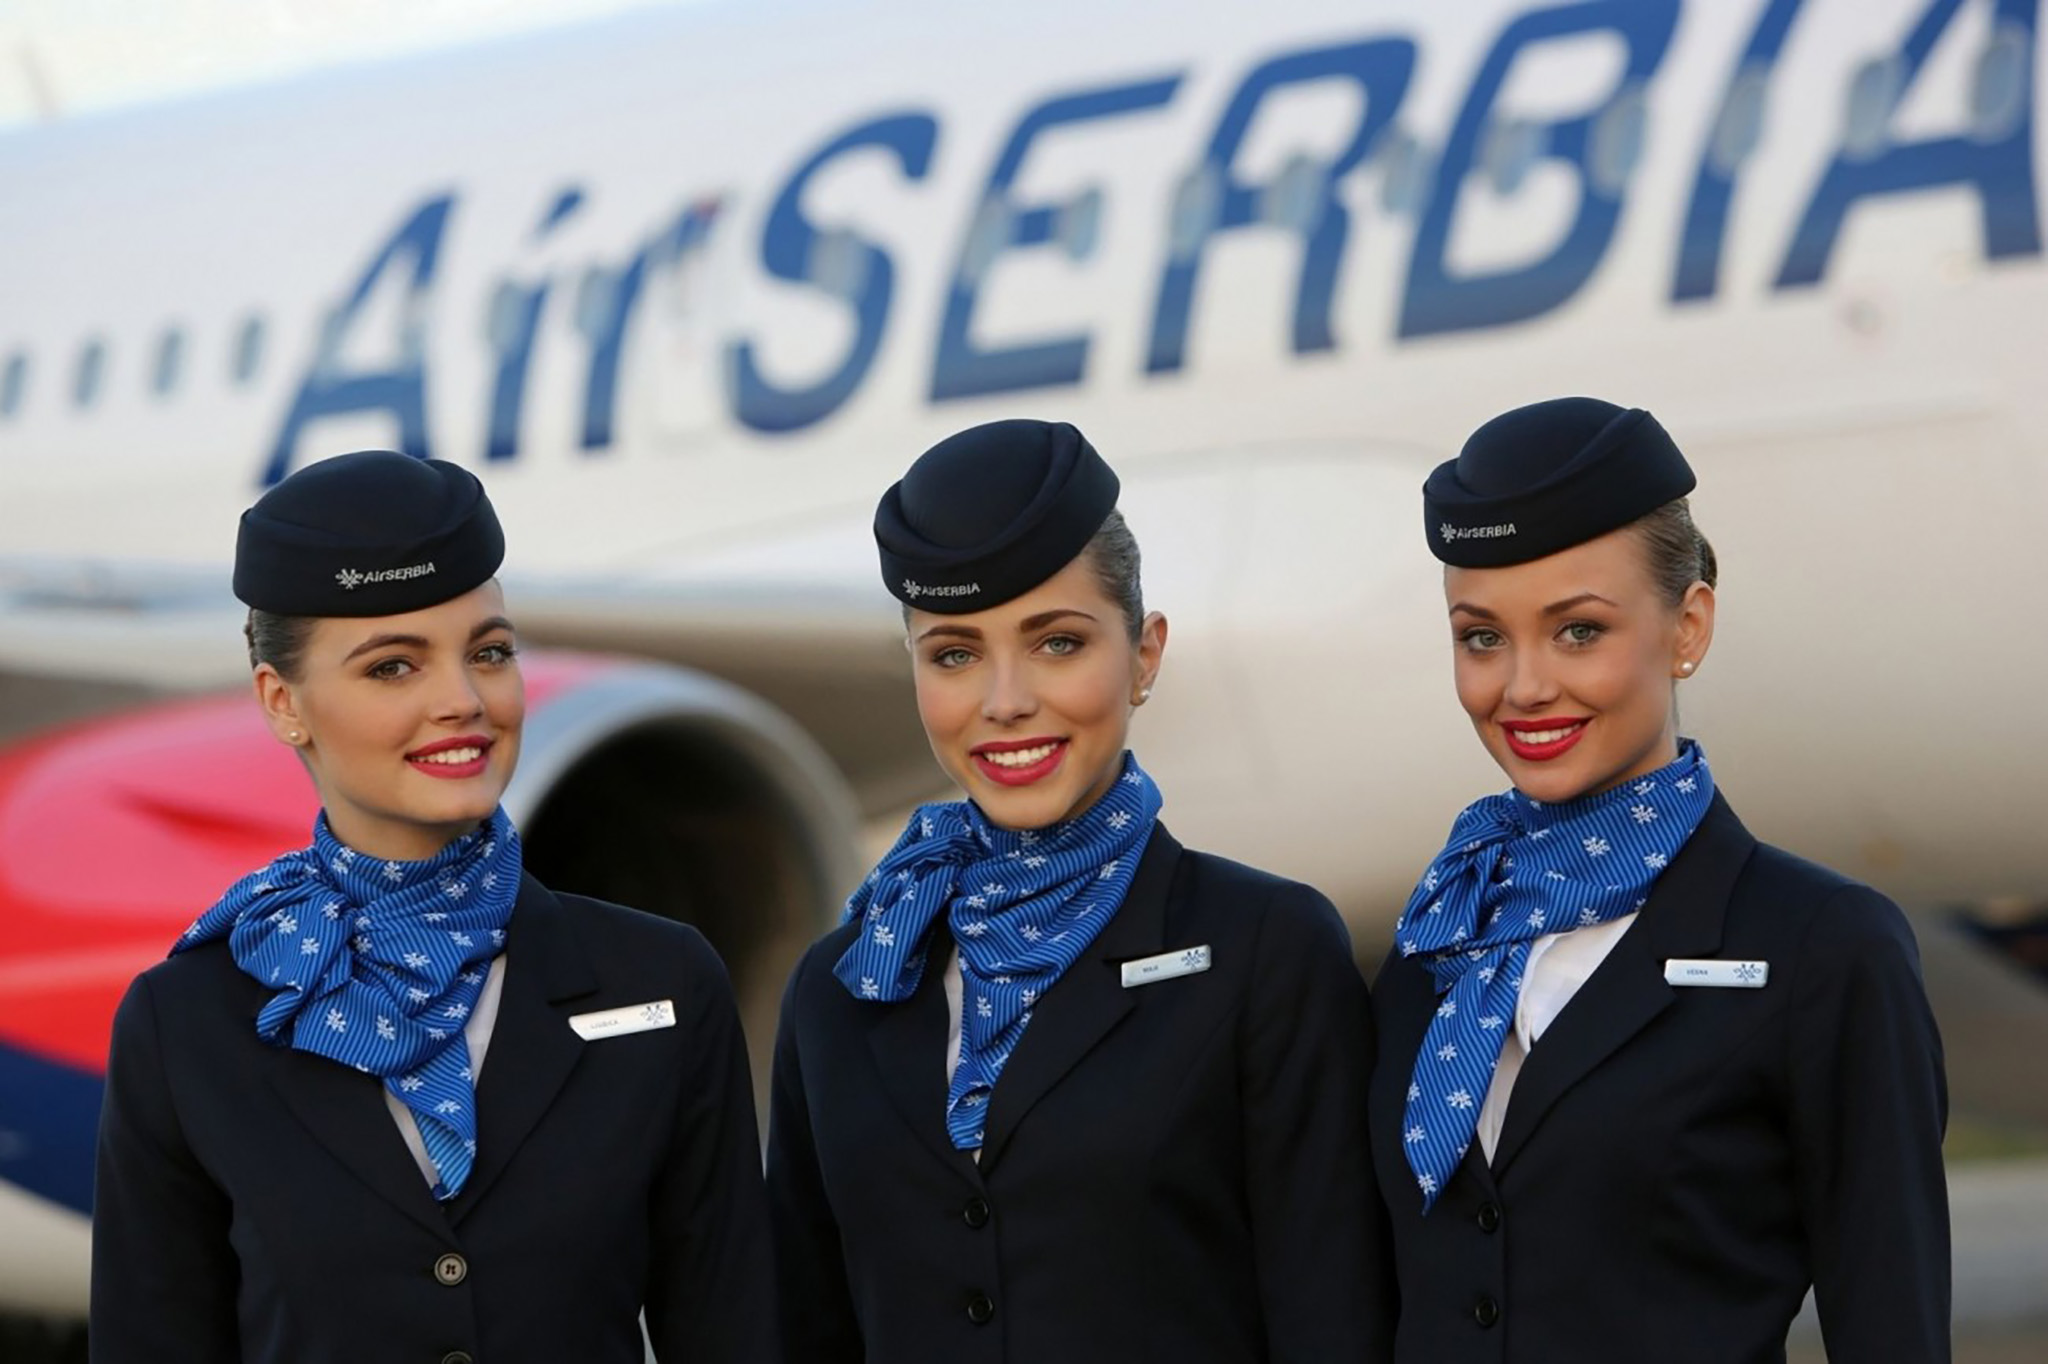 Air Serbia.jpg